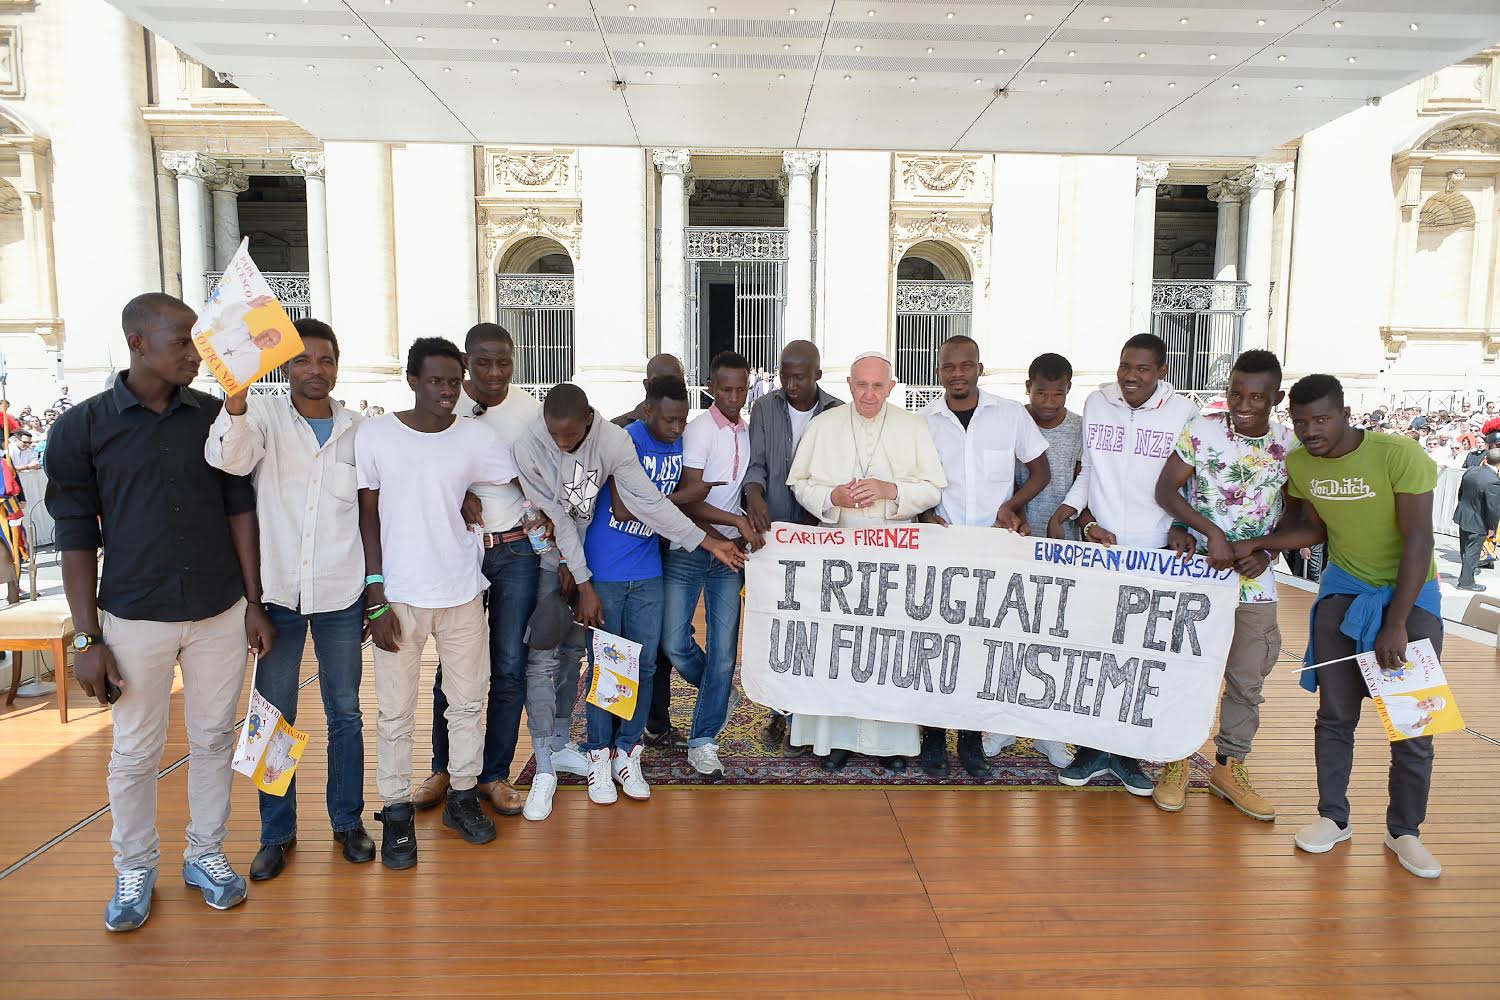 Le pape François salue 14 réfugiés avec lui pendant l'audience, 22 juin 2016 (c) L'Osservatore Romano